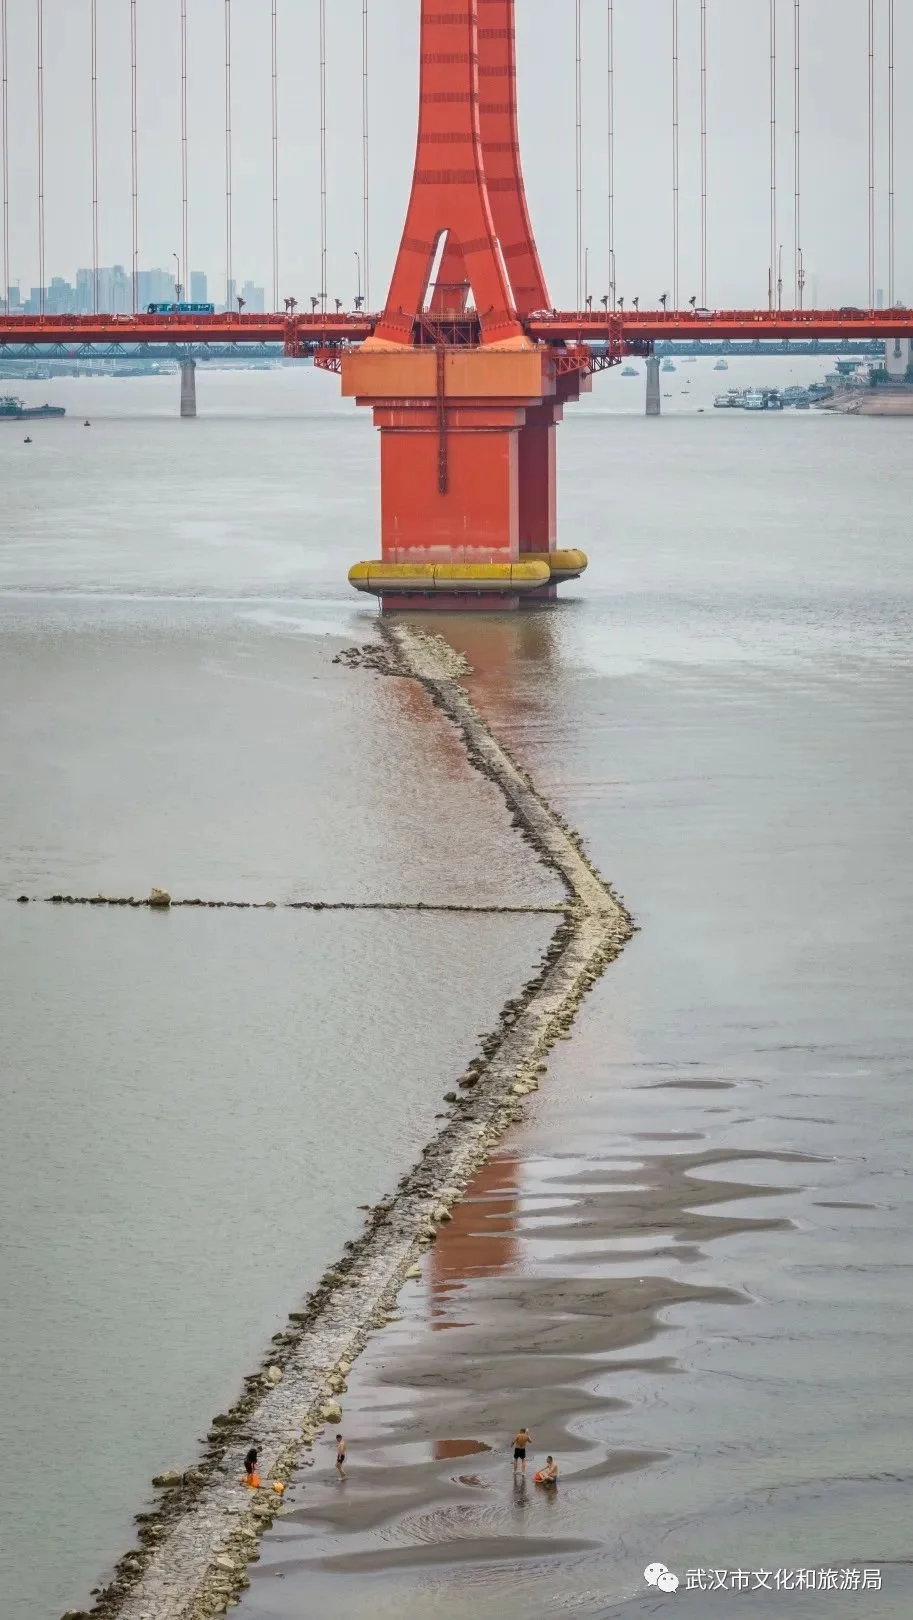 顺坝从鹦鹉洲大桥2号桥墩向上游延伸至杨泗港大桥附近，通过这一工程可以控制、归顺主流的流向，让靠近汉阳这边的河道水更深、更稳定，满足大型船舶通航需要。